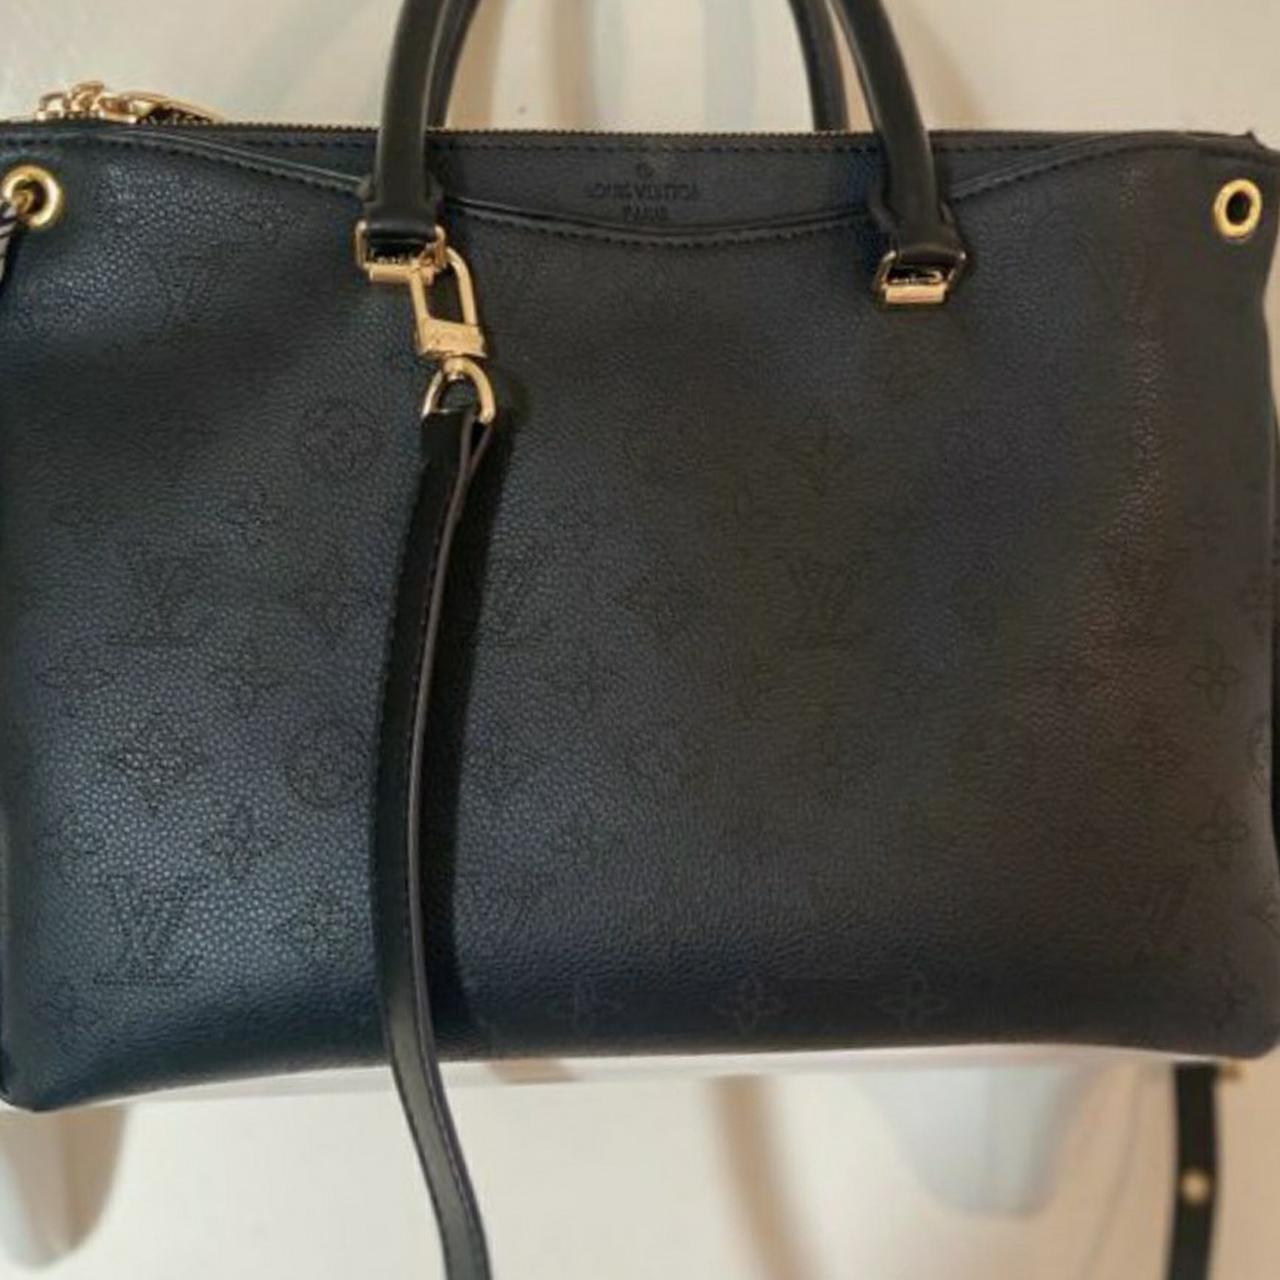 LV black handbag Embossed beautiful purse In... - Depop